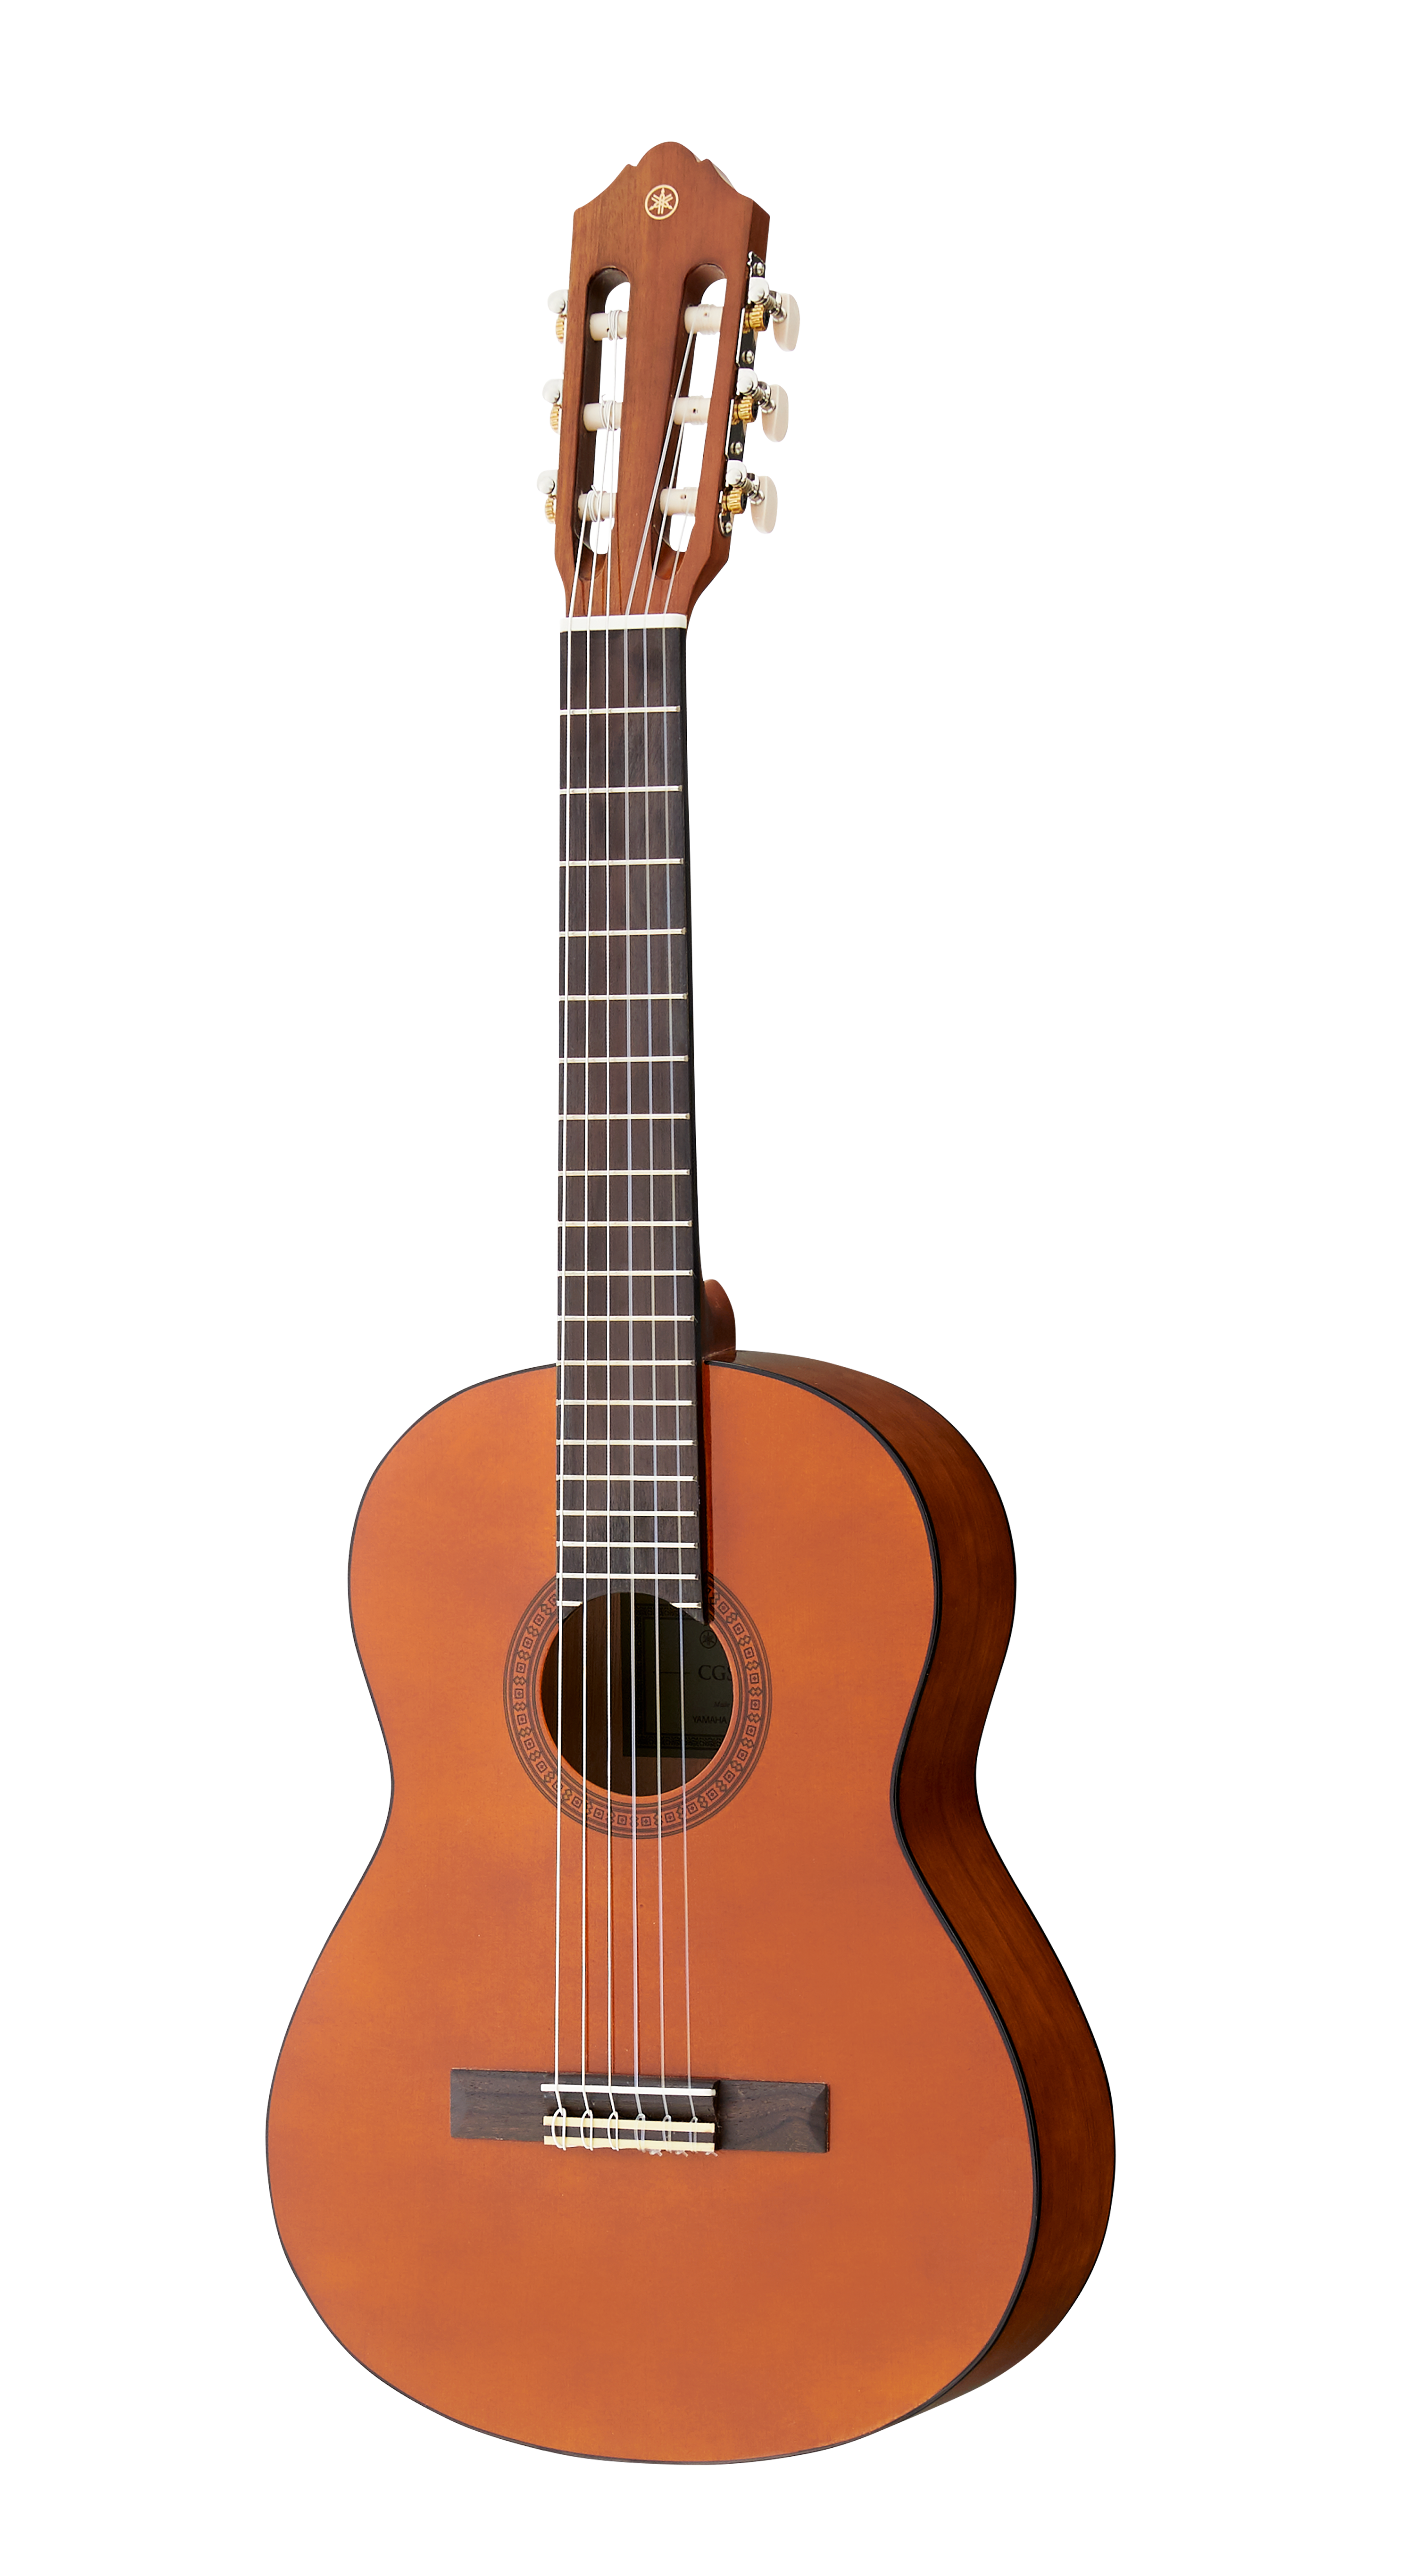 ヤマハ | ミニギター/ギタレレ™ - アコースティックギター - 概要